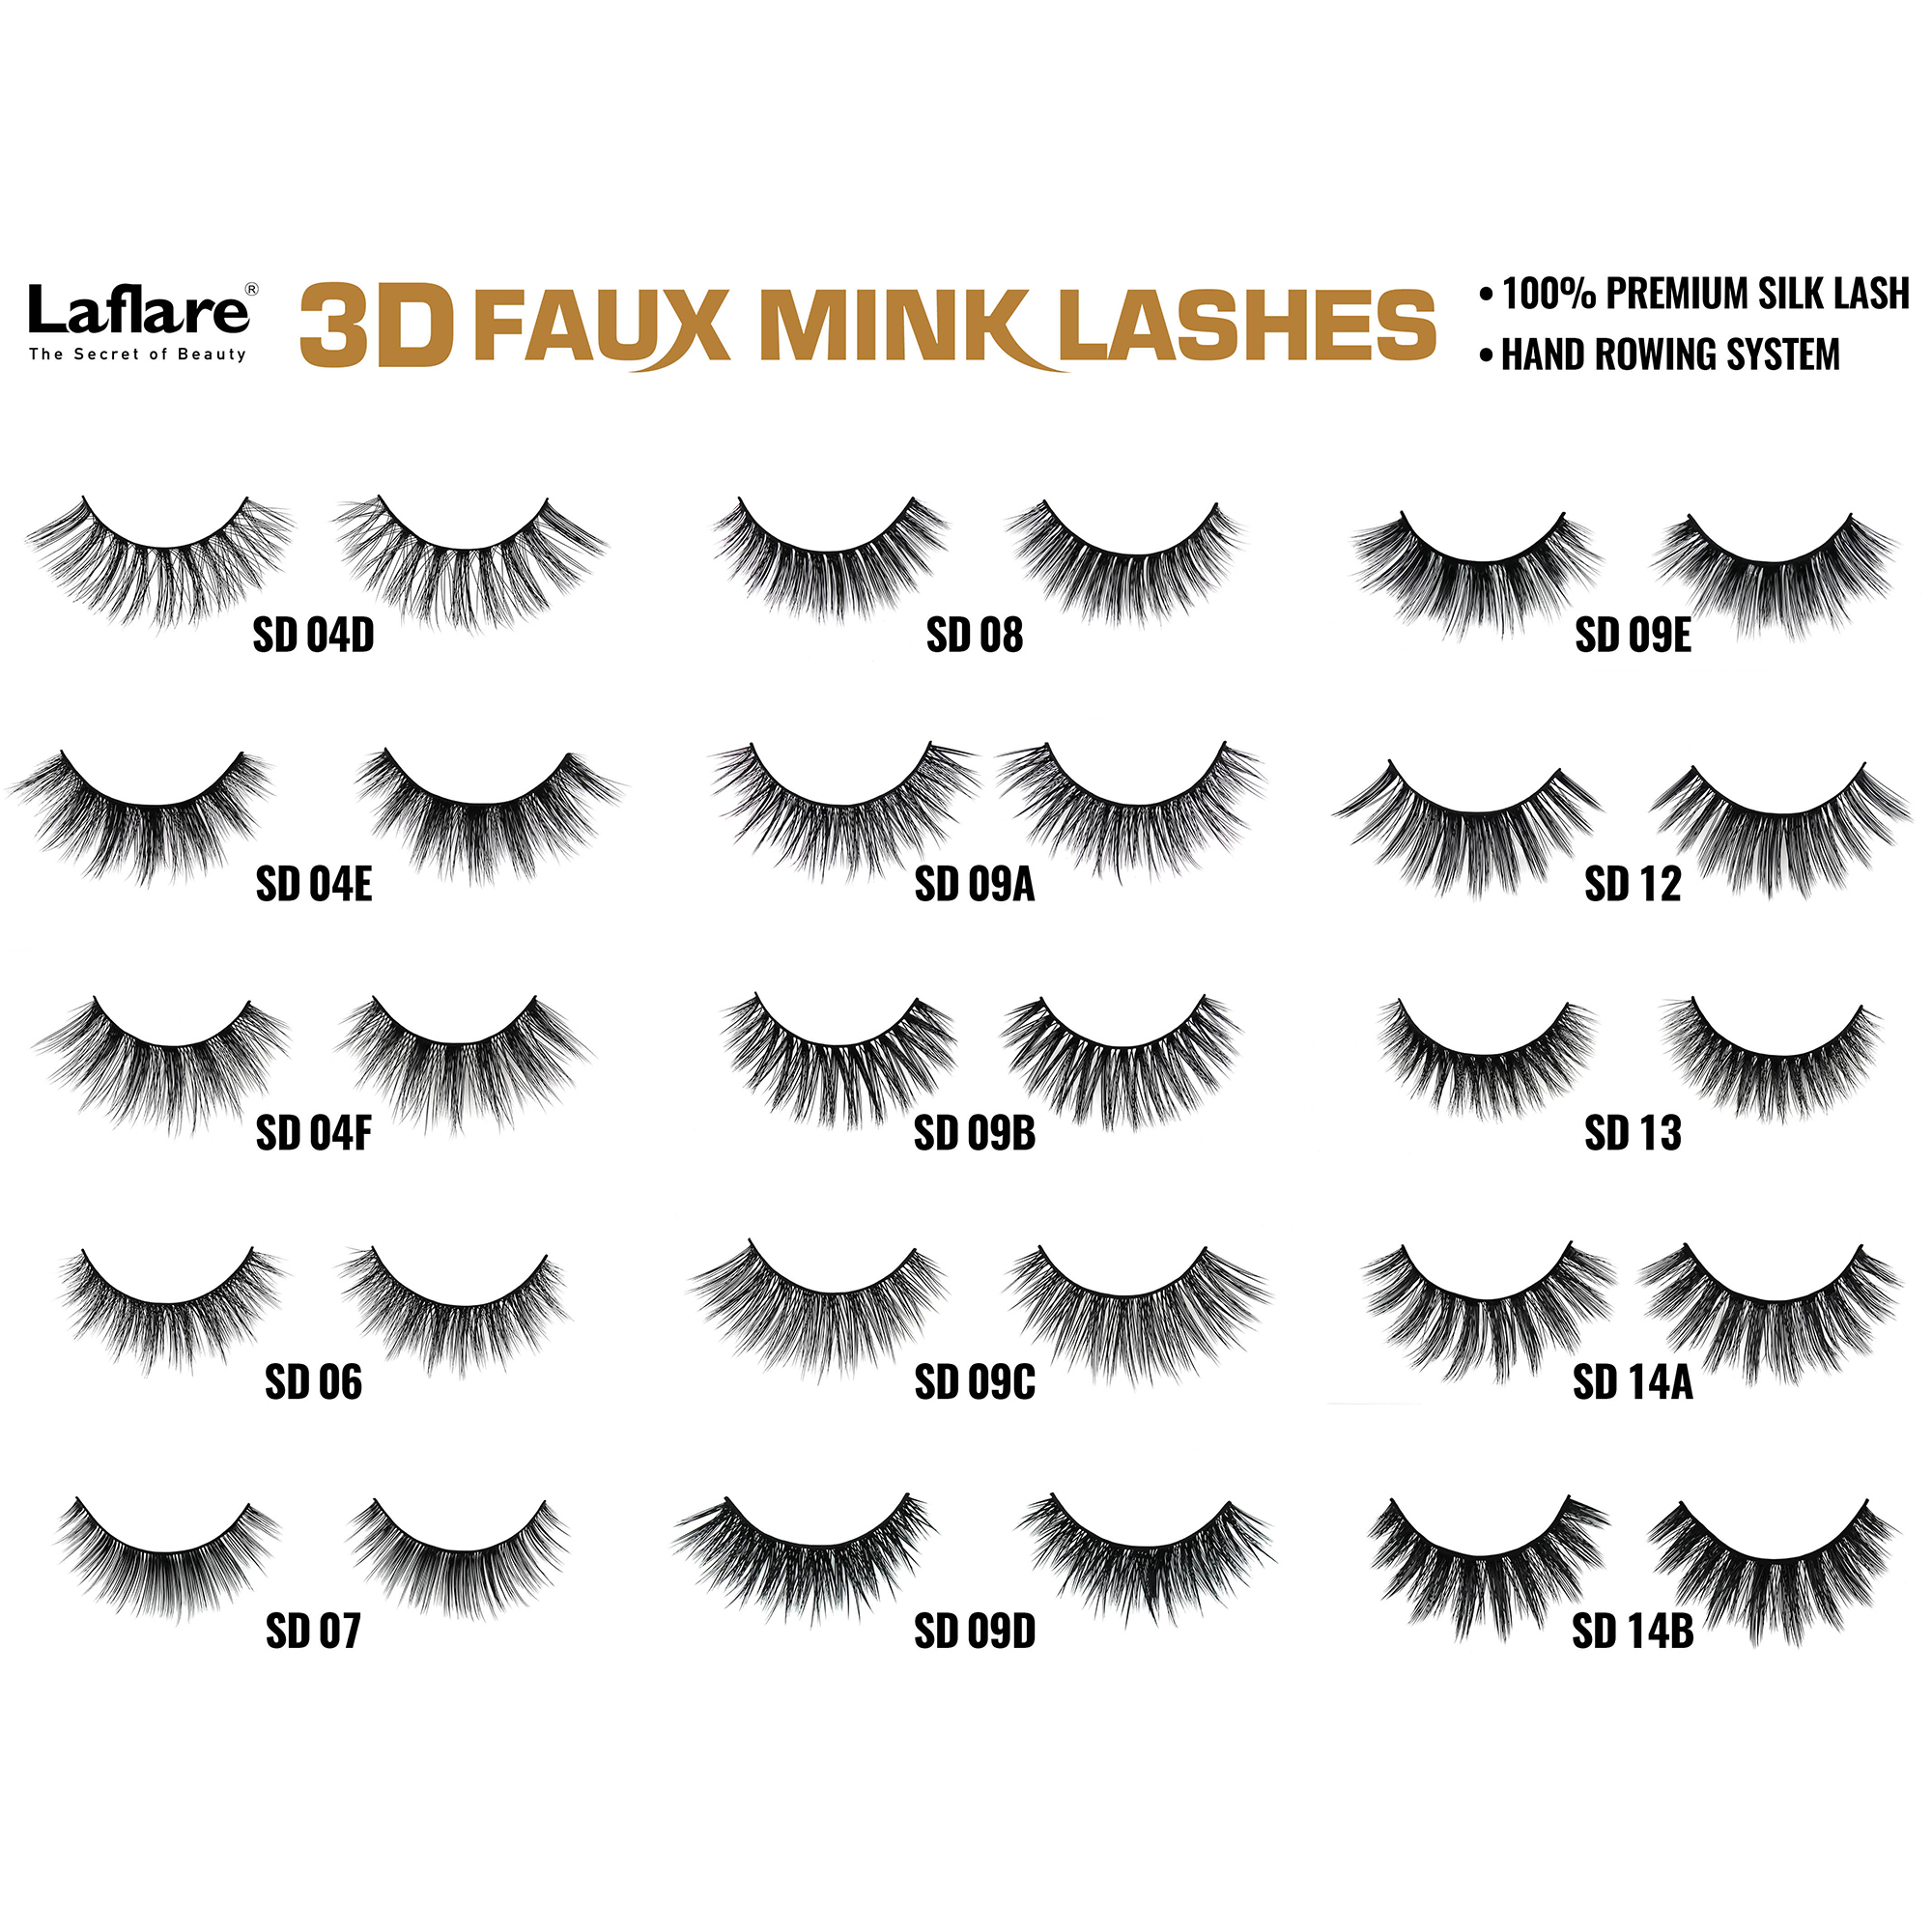 LAFLARE 3d Faux Mink Lashes - SD01G